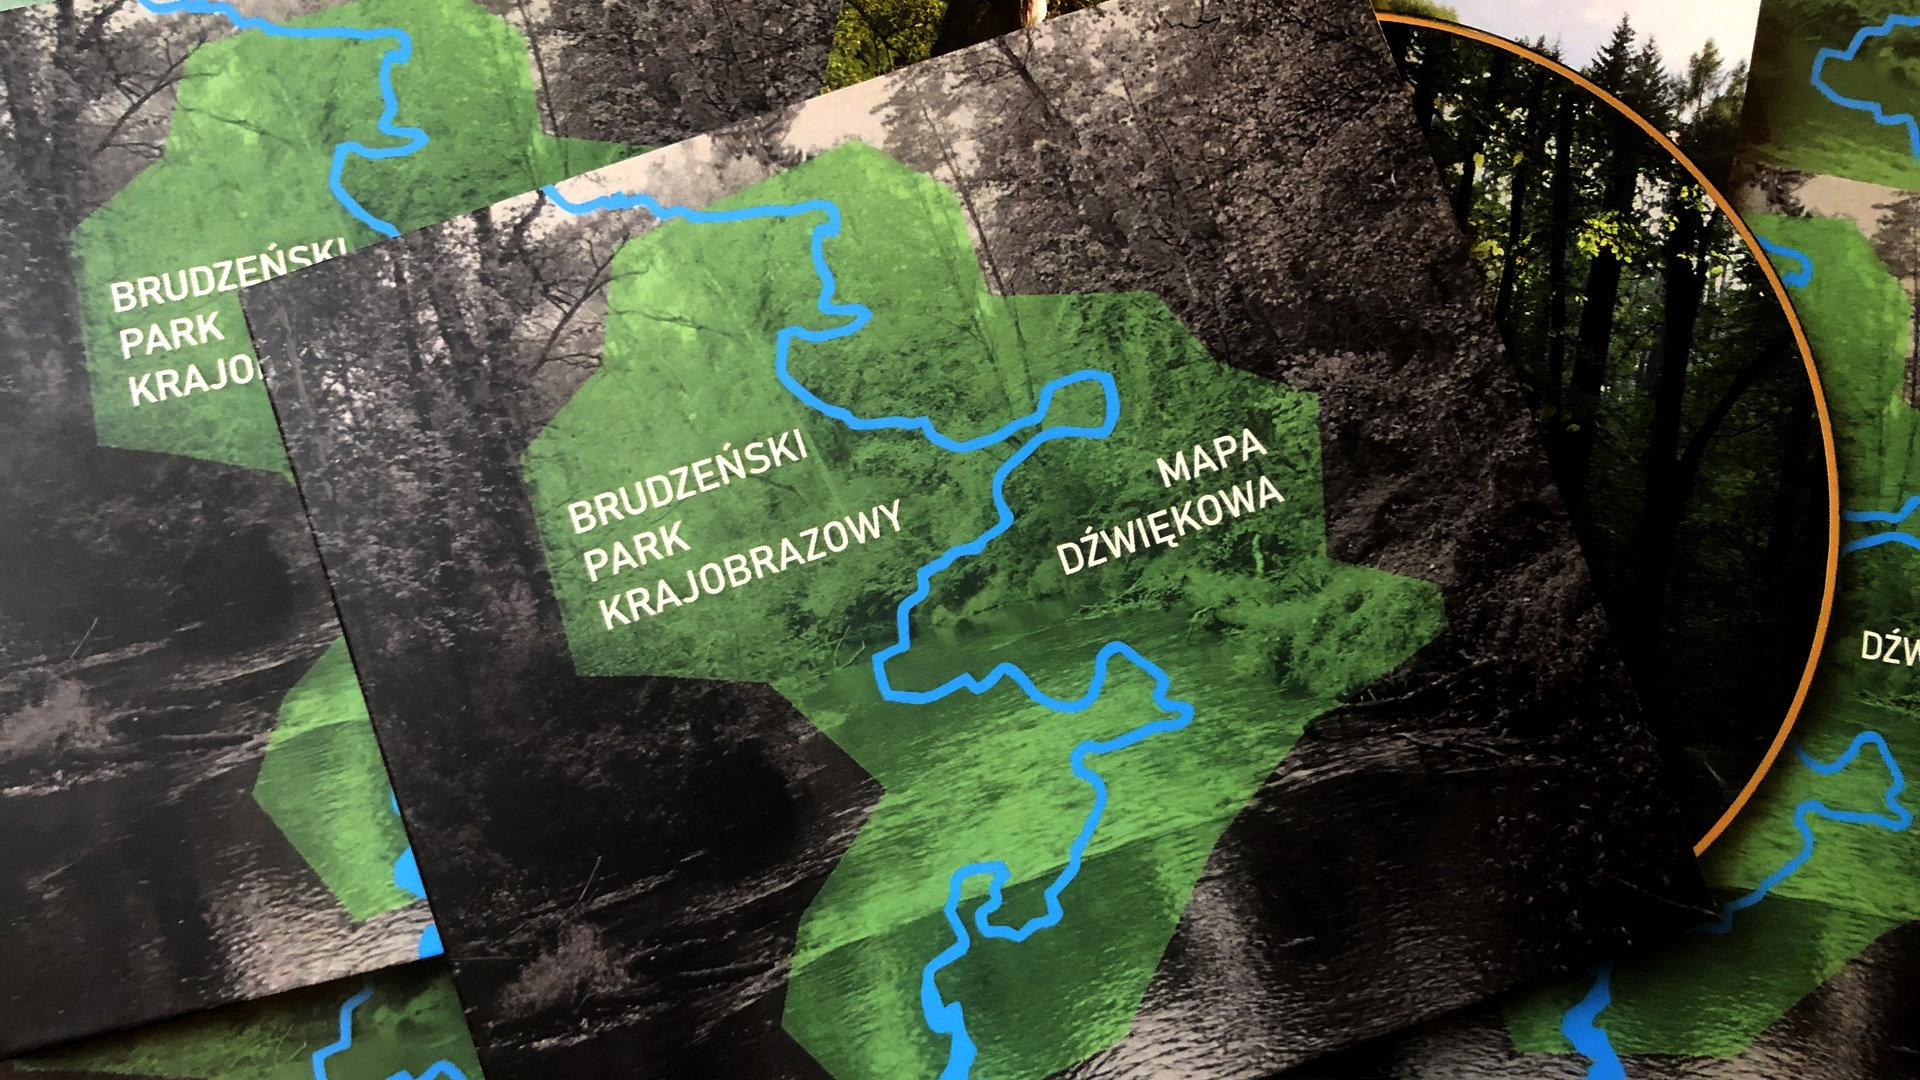 Mapa dźwiękowa Brudzeńskiego Parku Krajobrazowego dostępna od 12 grudnia!